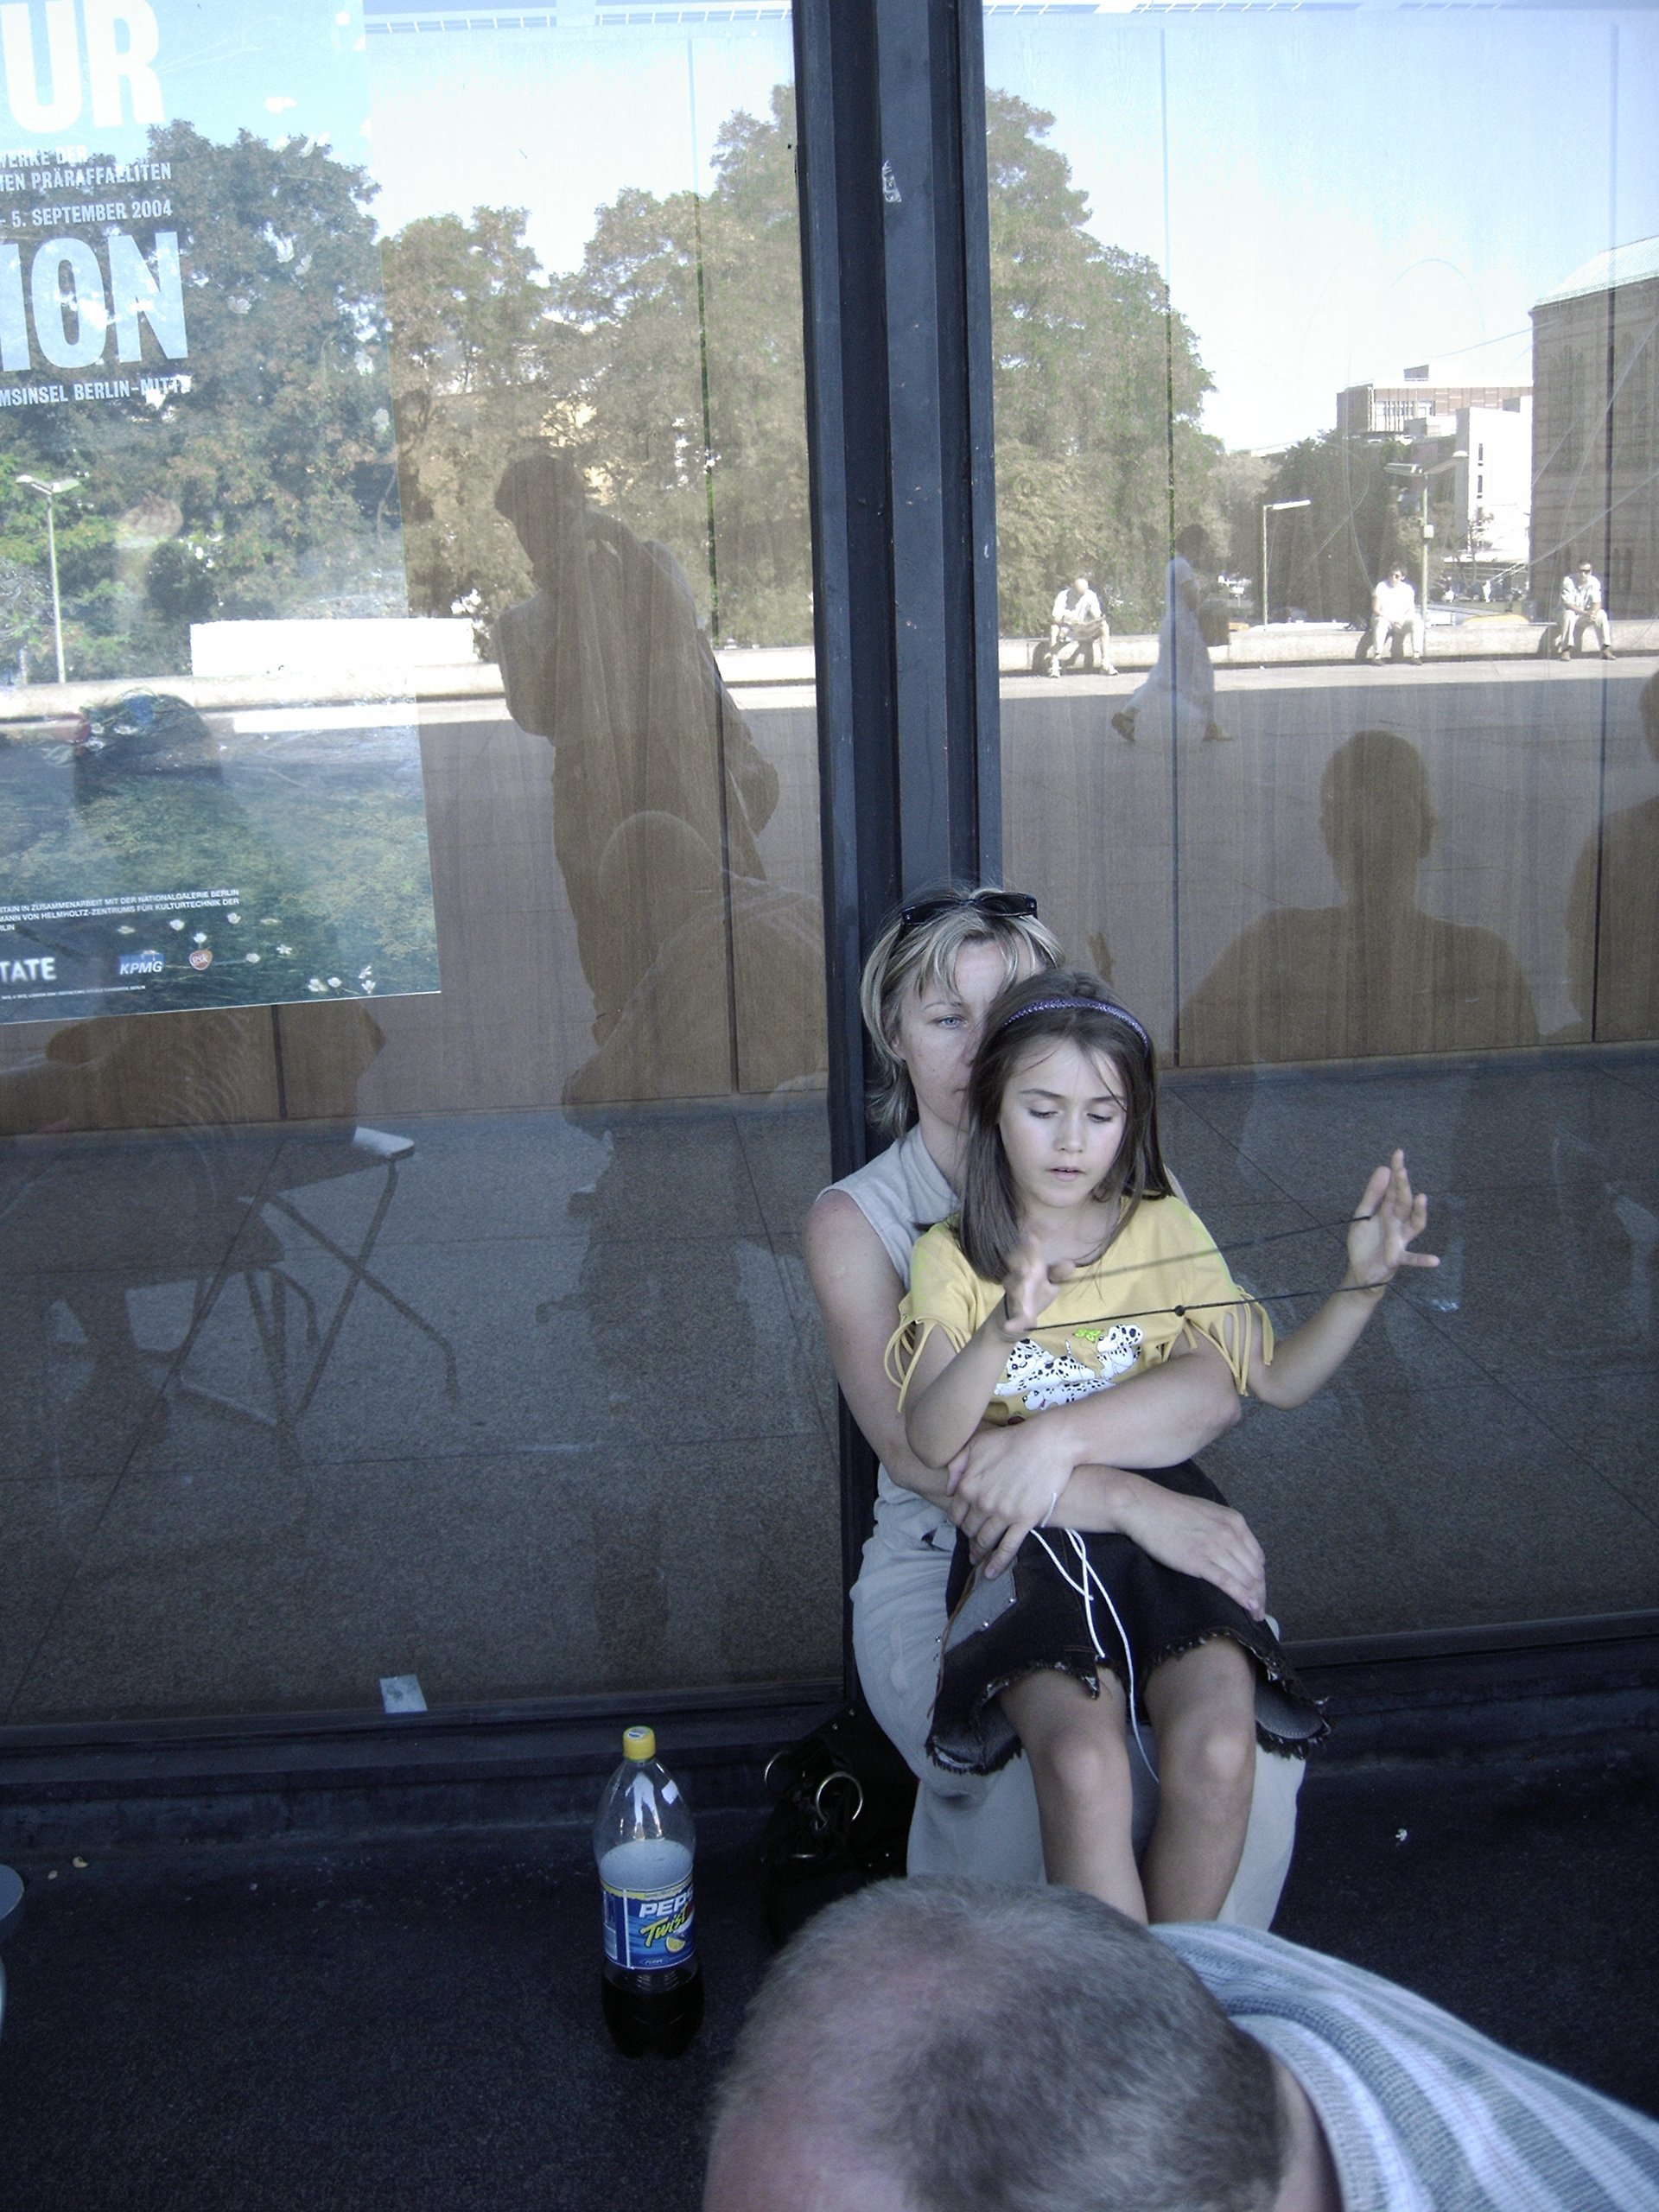 In der Schlange um die Neue Nationalgalerie in Berlin waehrend der Kunstausstellung Das MoMA in Berlin im September 2004: Eine Mutter mit ihrem spielenden Kind. Photo: Kim Hartley.